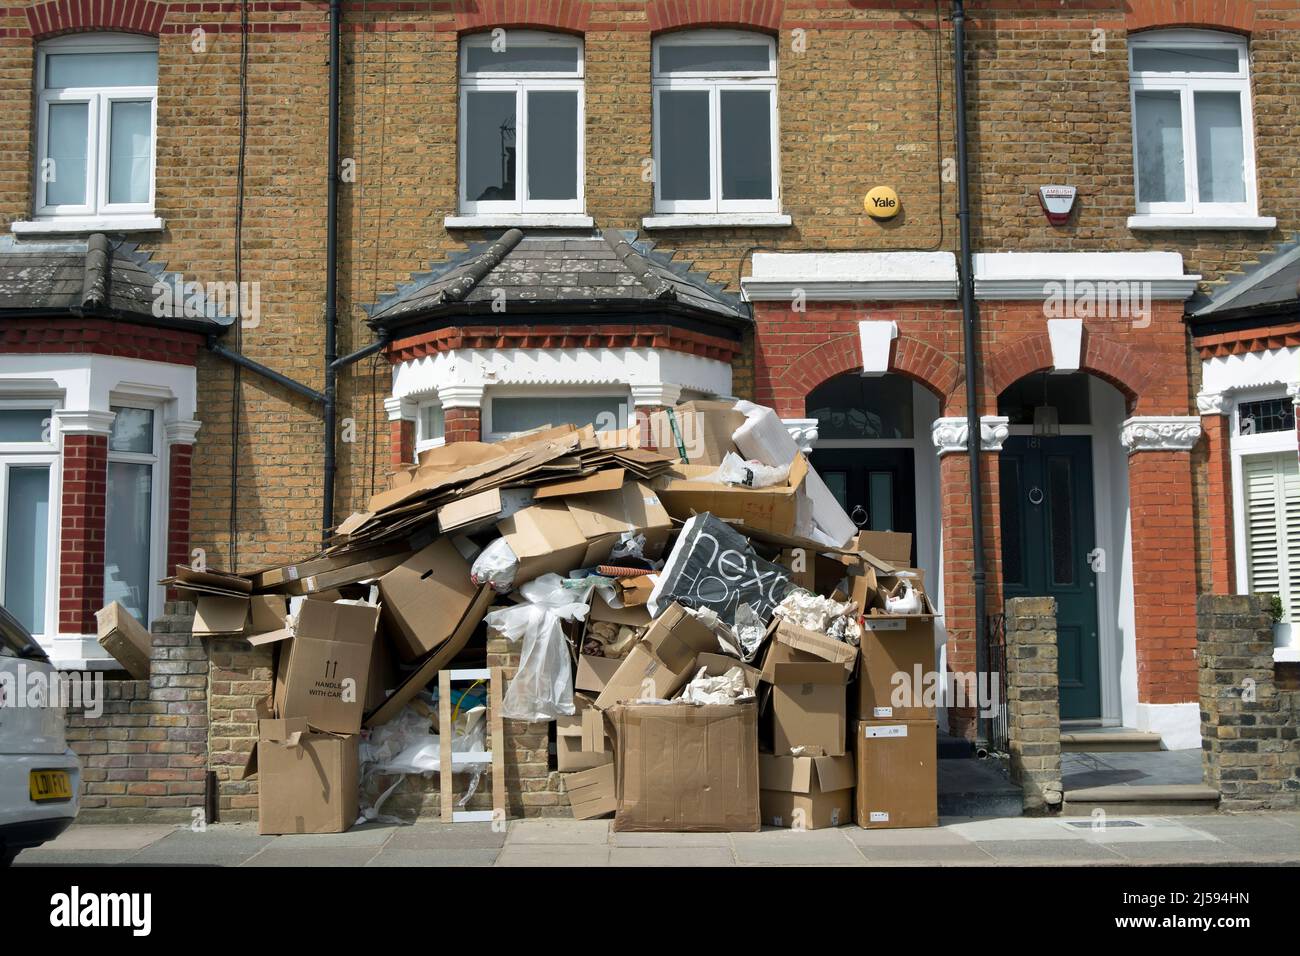 Vor einem viktorianischen Haus auf der mittleren Terrasse in twickemham, middlesex, england, stapelten sich Kartons mit ausrangierten Verpackungen und anderem Müll Stockfoto